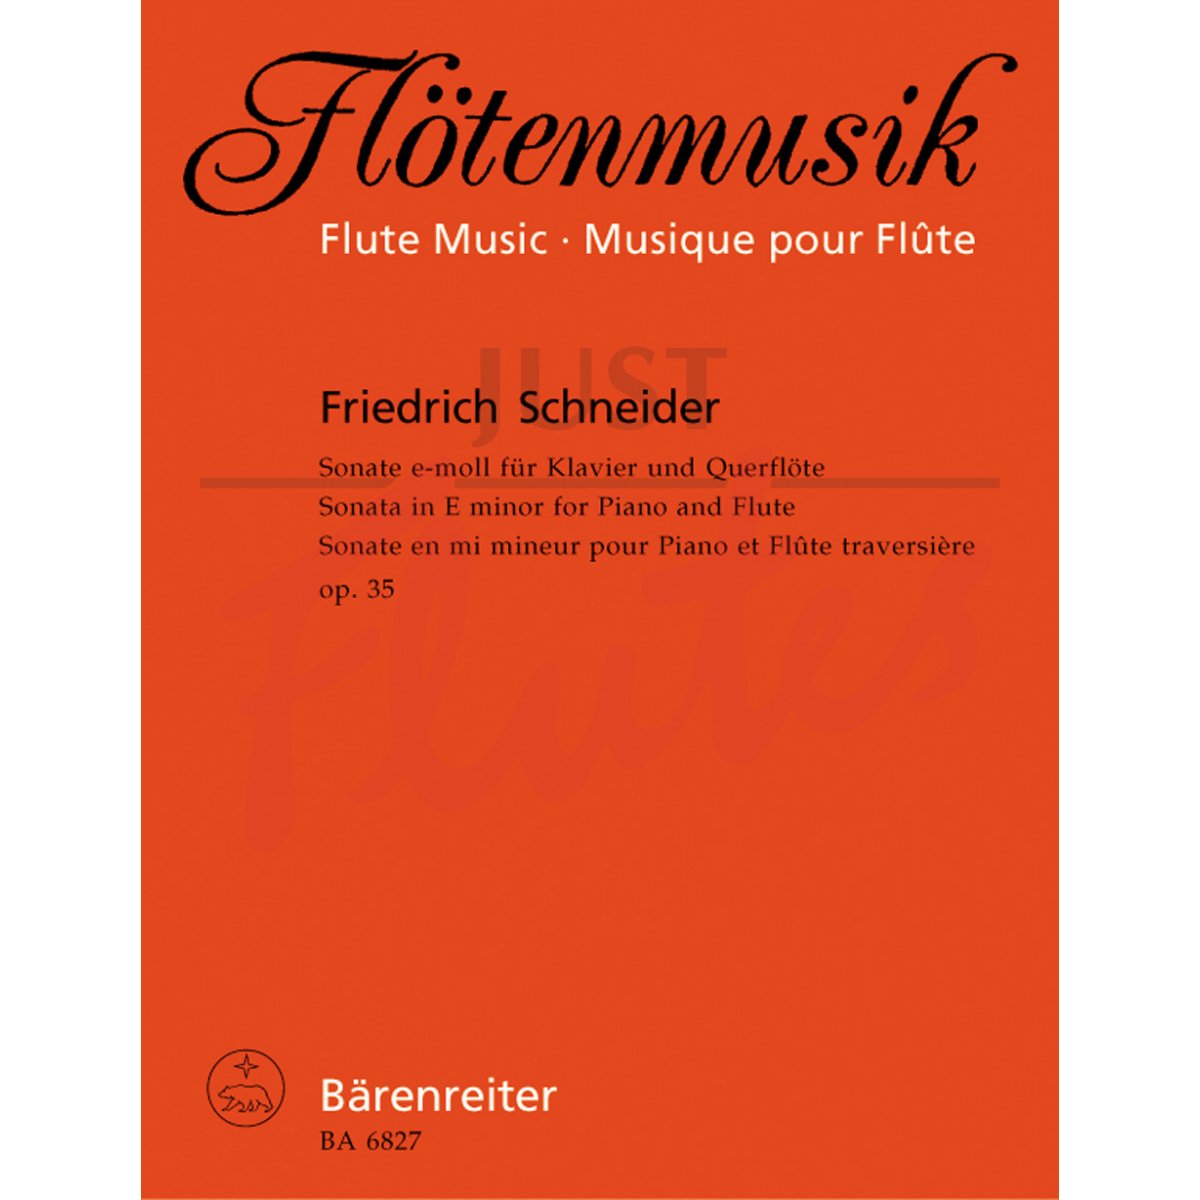 Sonata in E minor for Piano and Flute